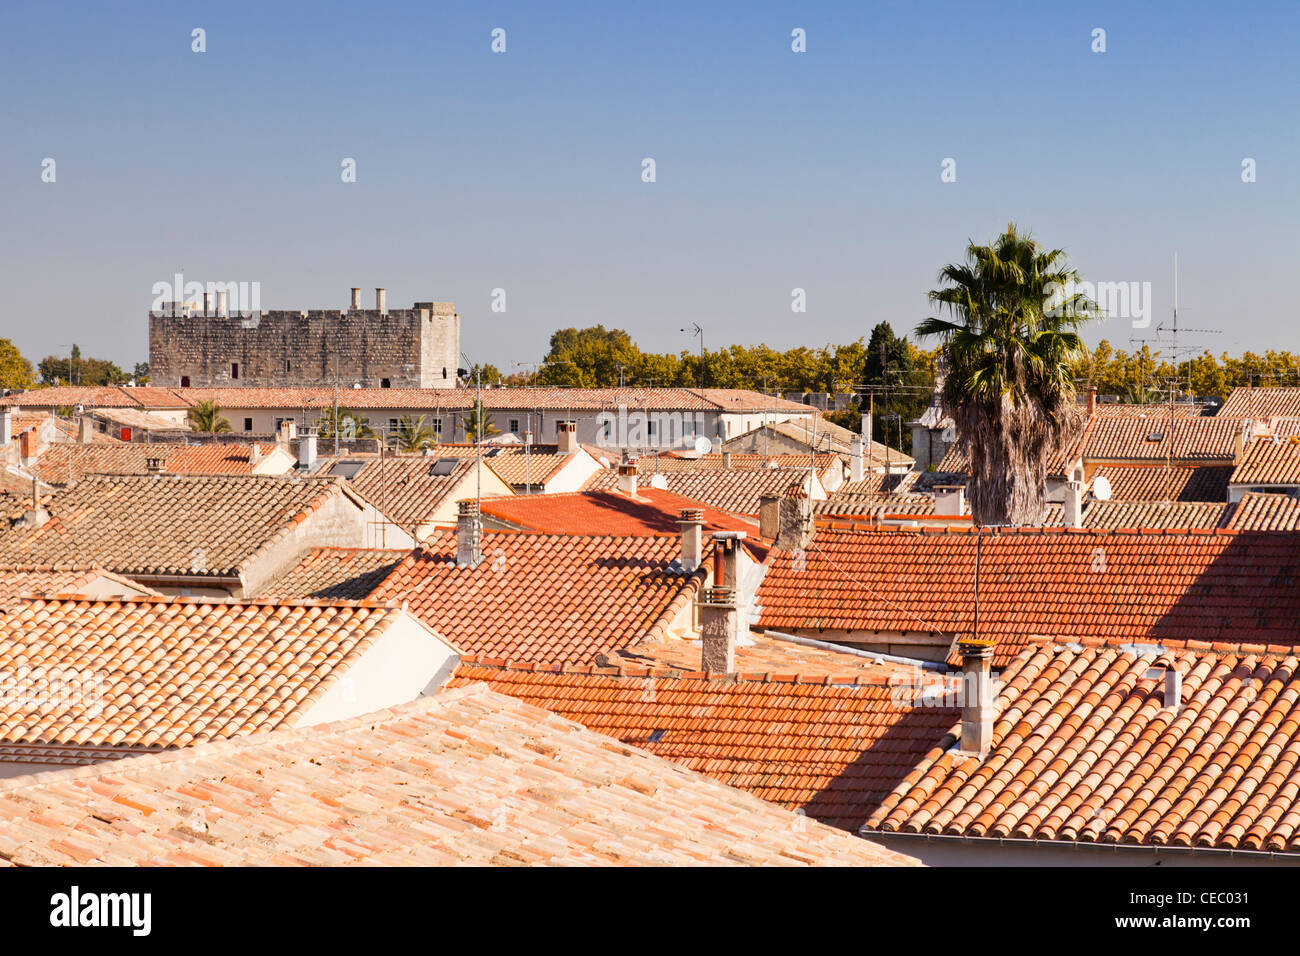 Vistas de los tejados de el puerto medieval de Aigues-Mortes, Languedoc-Roussillon, Francia. Foto de stock